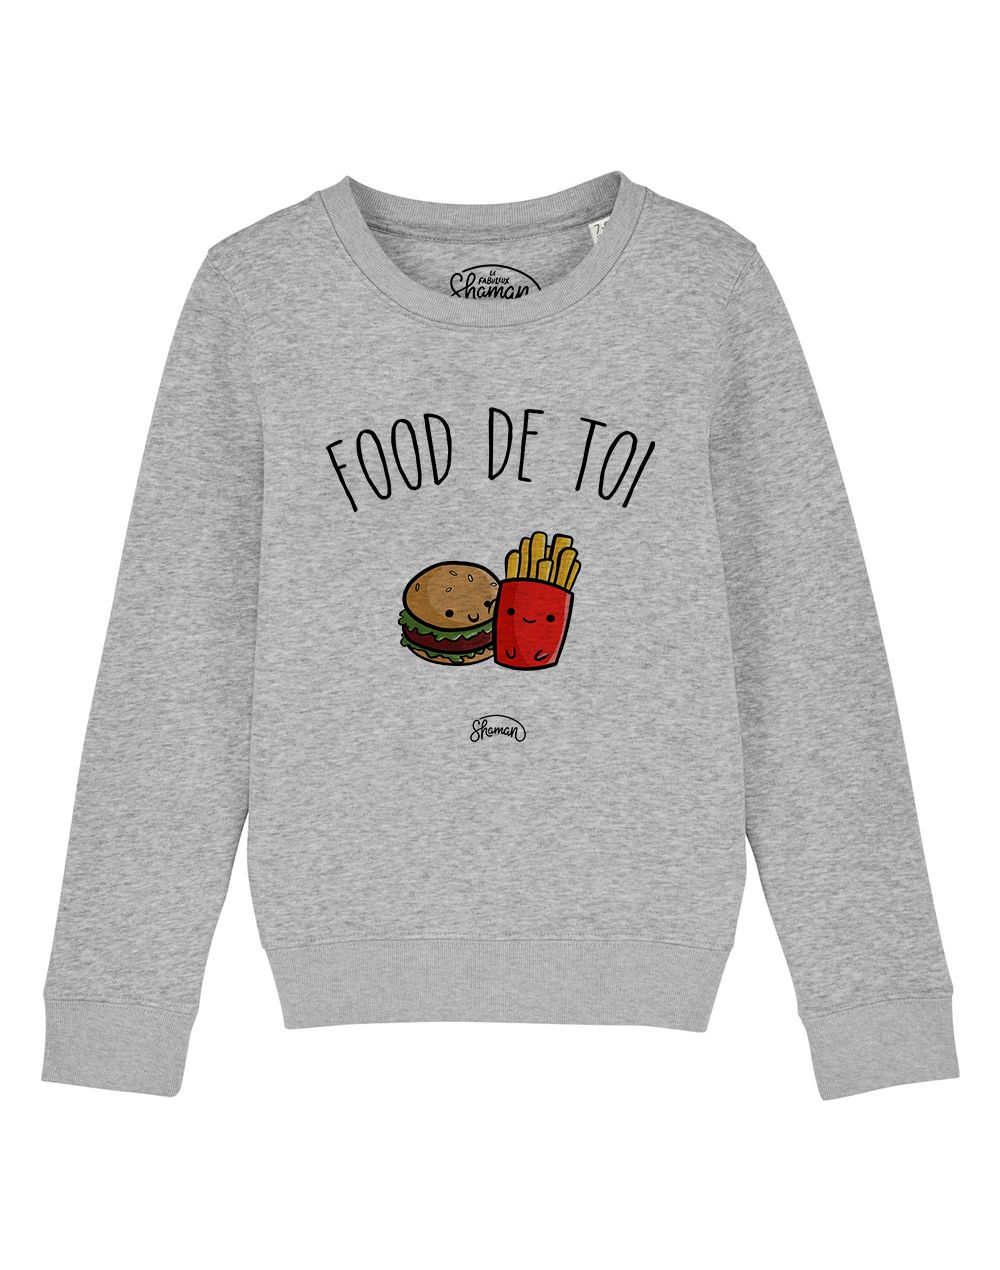 Sweat "Food de toi"